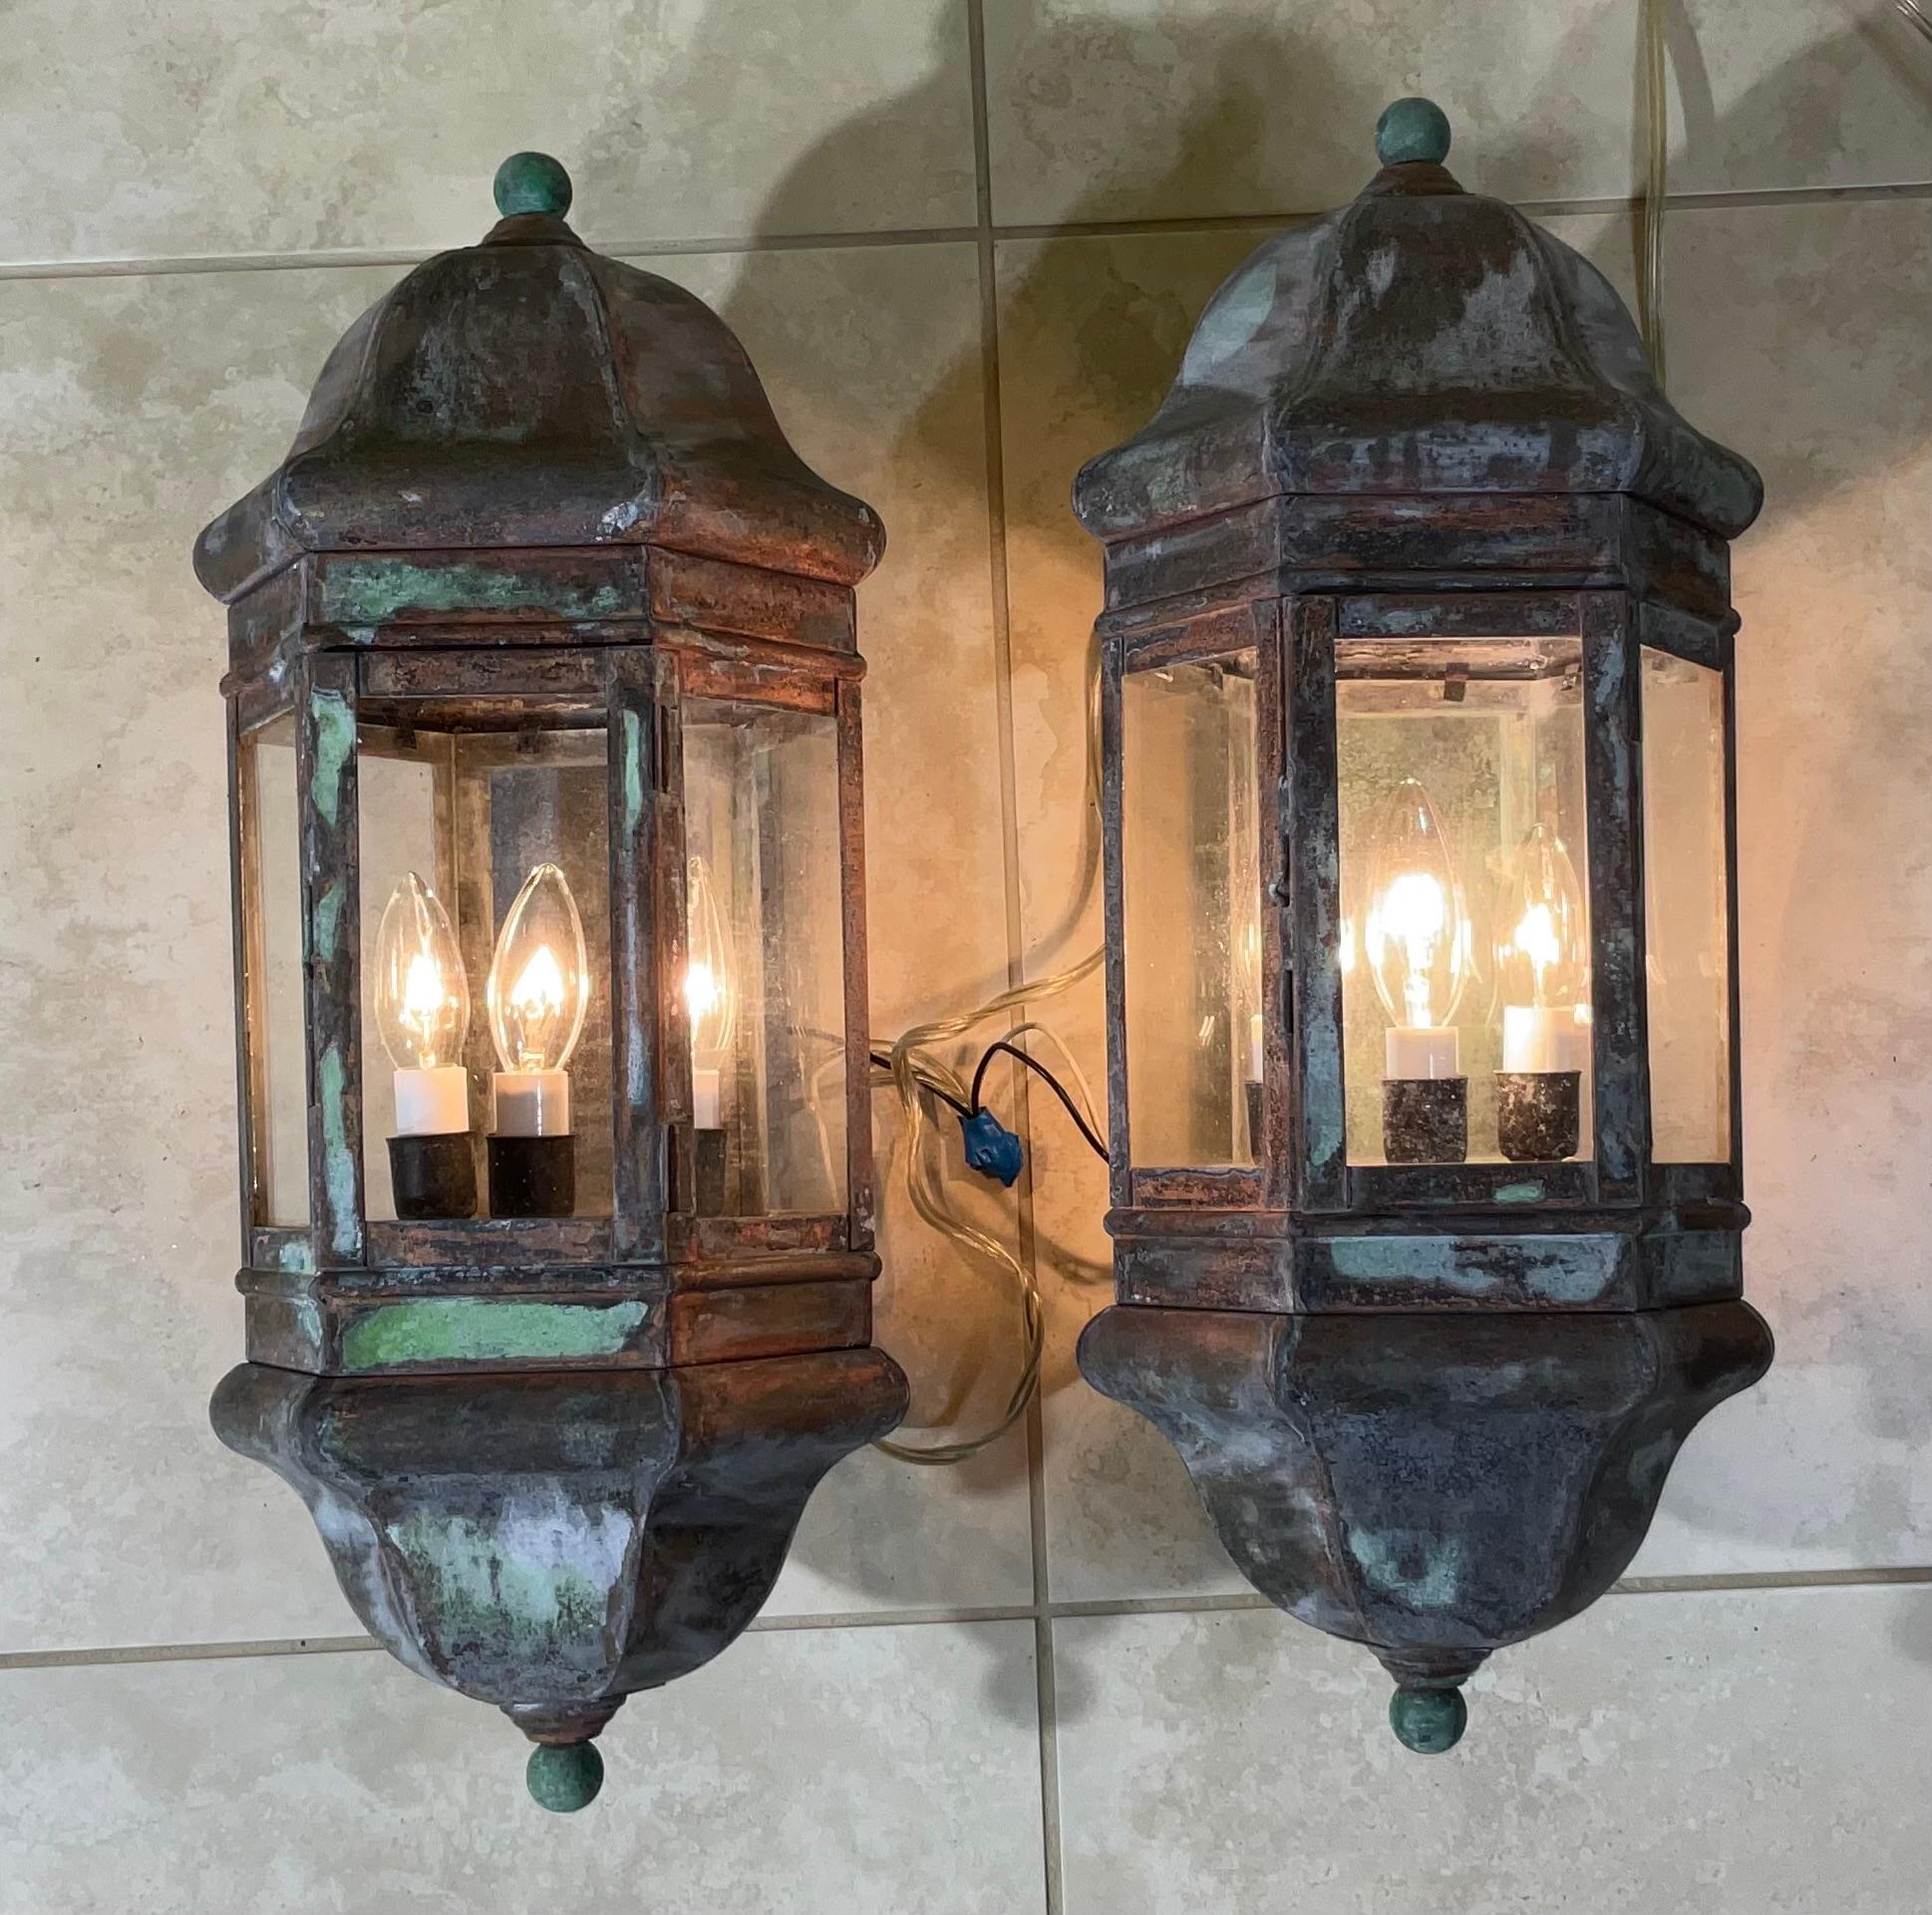 Hochwertiges Paar Wandlaternen, handgefertigt aus massivem Messing mit drei 40-Watt-Lampen pro Laterne, geeignet für Feuchträume. 
Schöne oxidierte Patina.